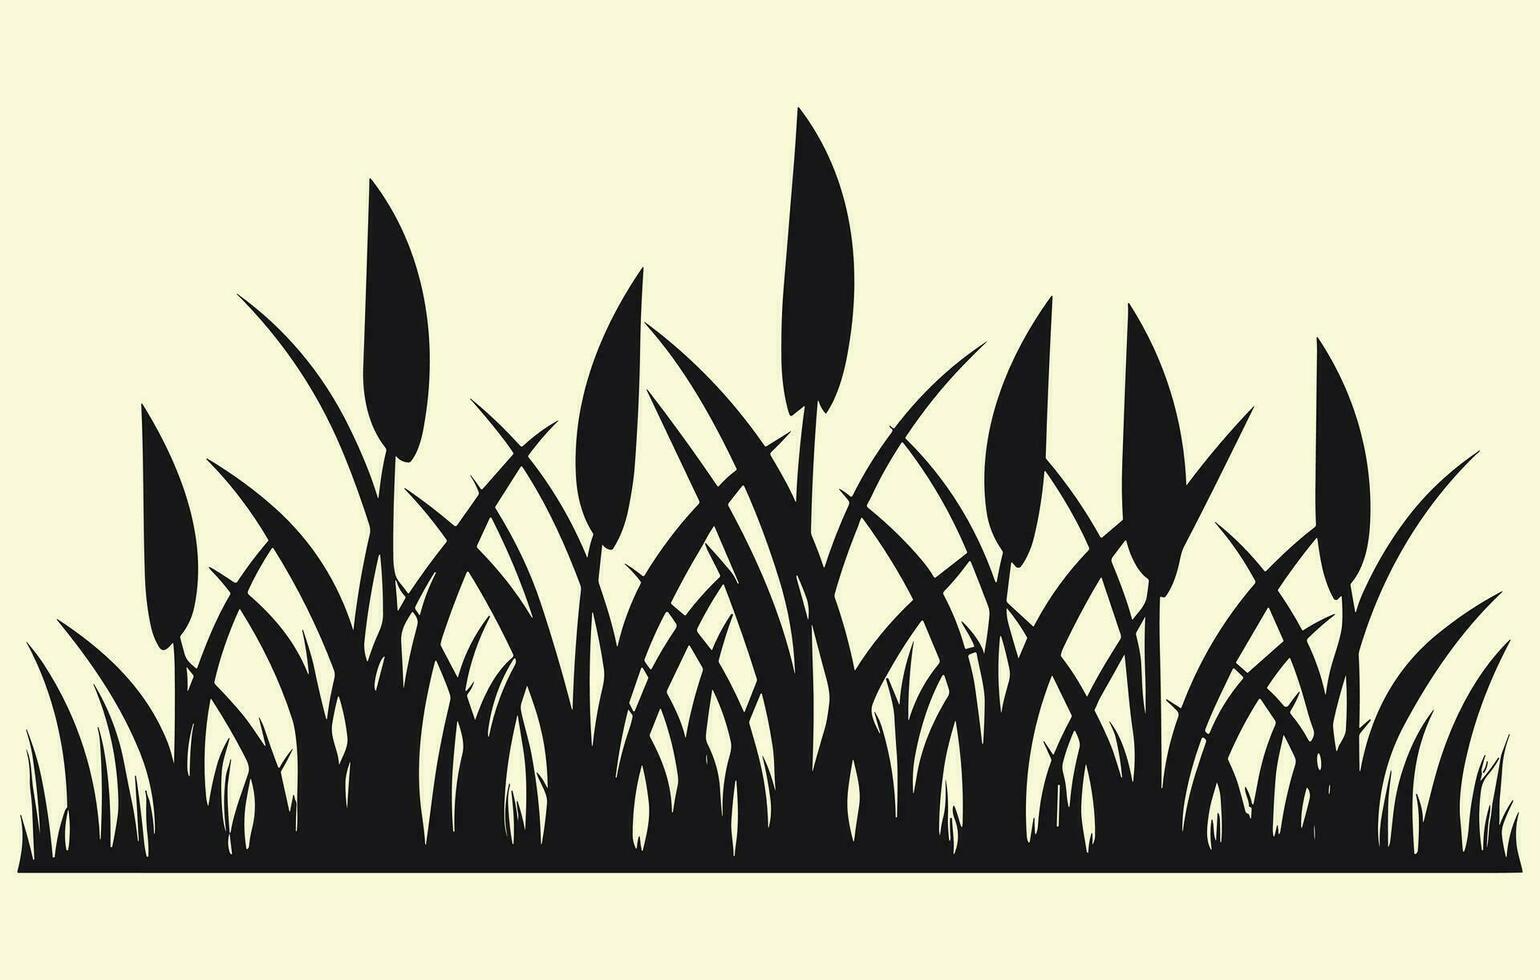 maïs plantage. vector illustratie van zoet maïs ontspruiten in veld-